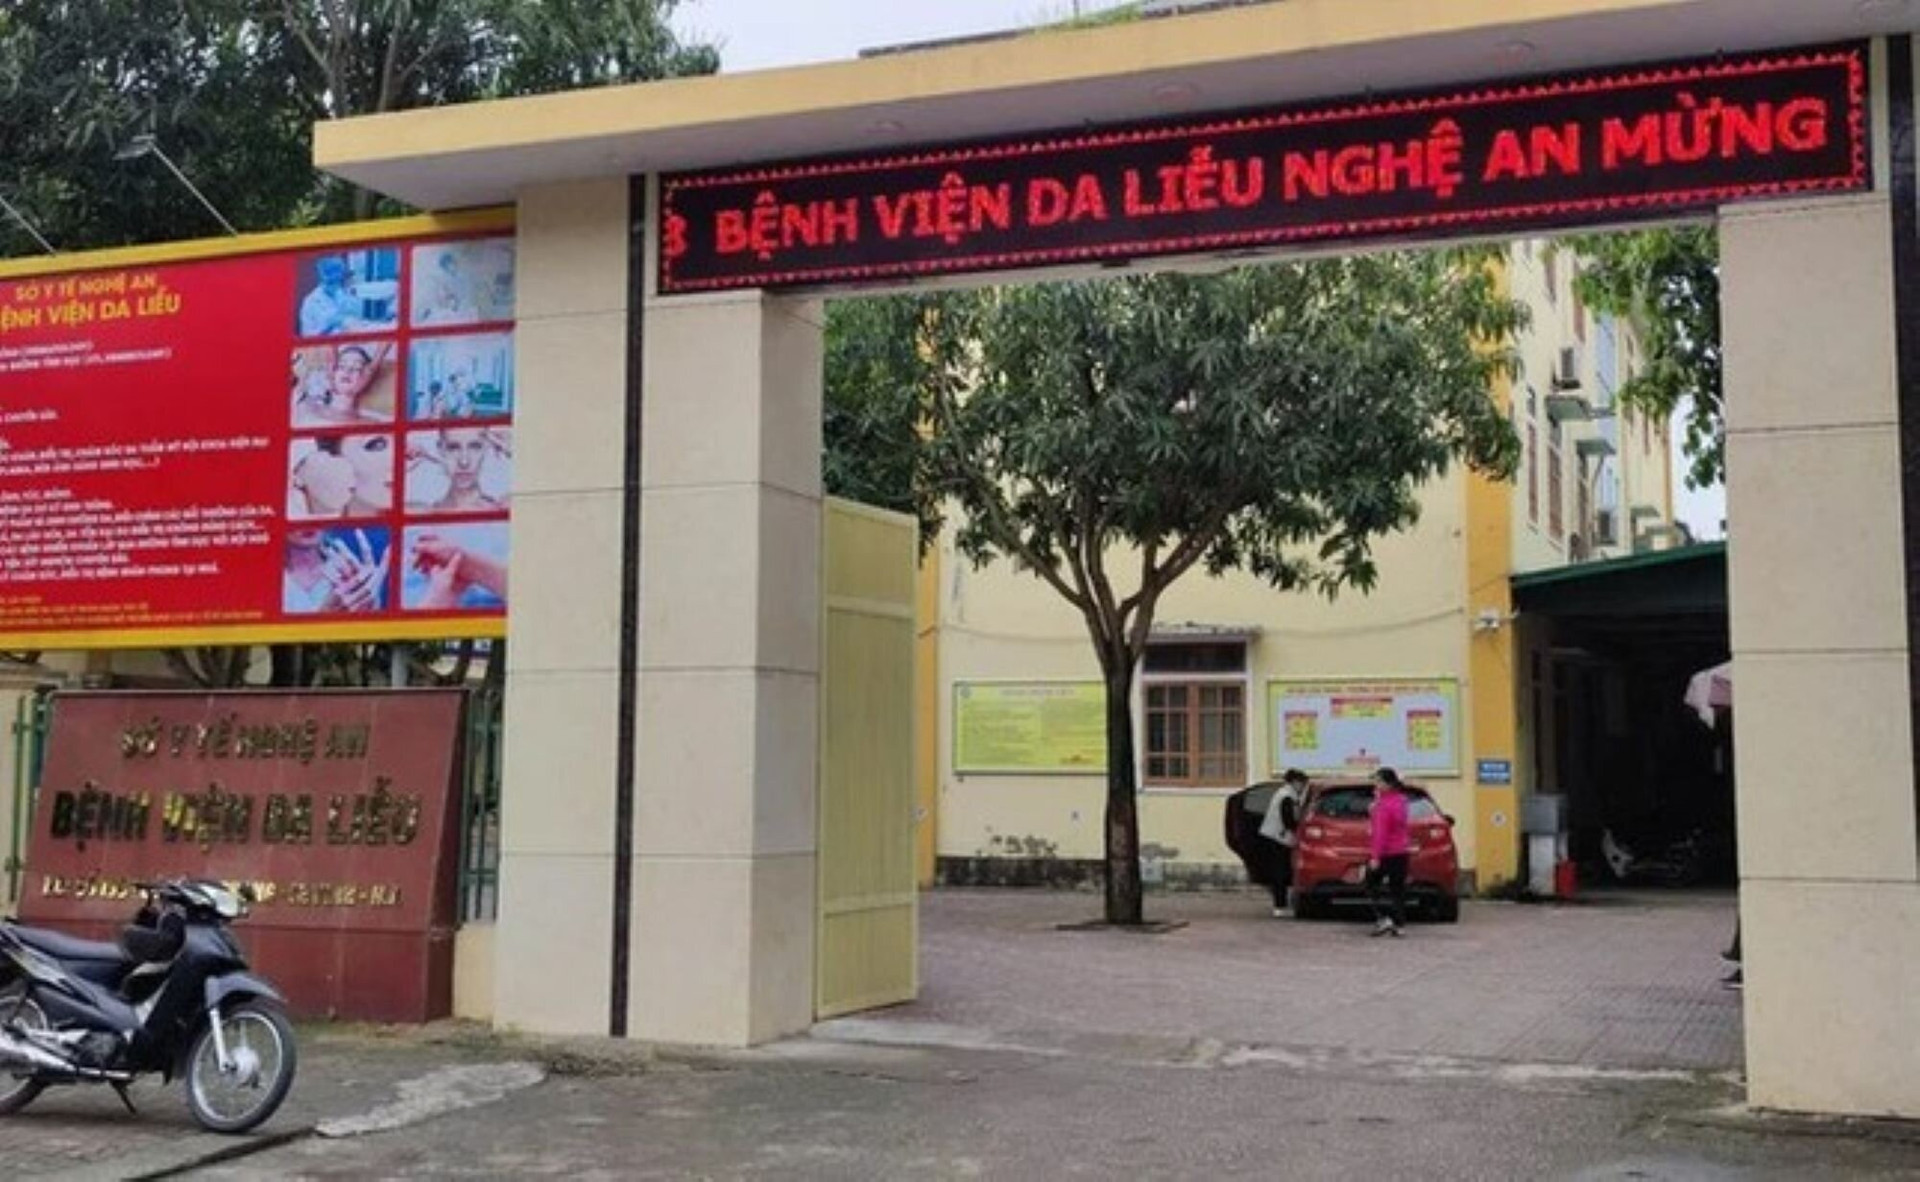 Bệnh viện Da liễu Nghệ An nơi xảy ra nhiều sai phạm được Sở Y tế Nghệ An kết luận.